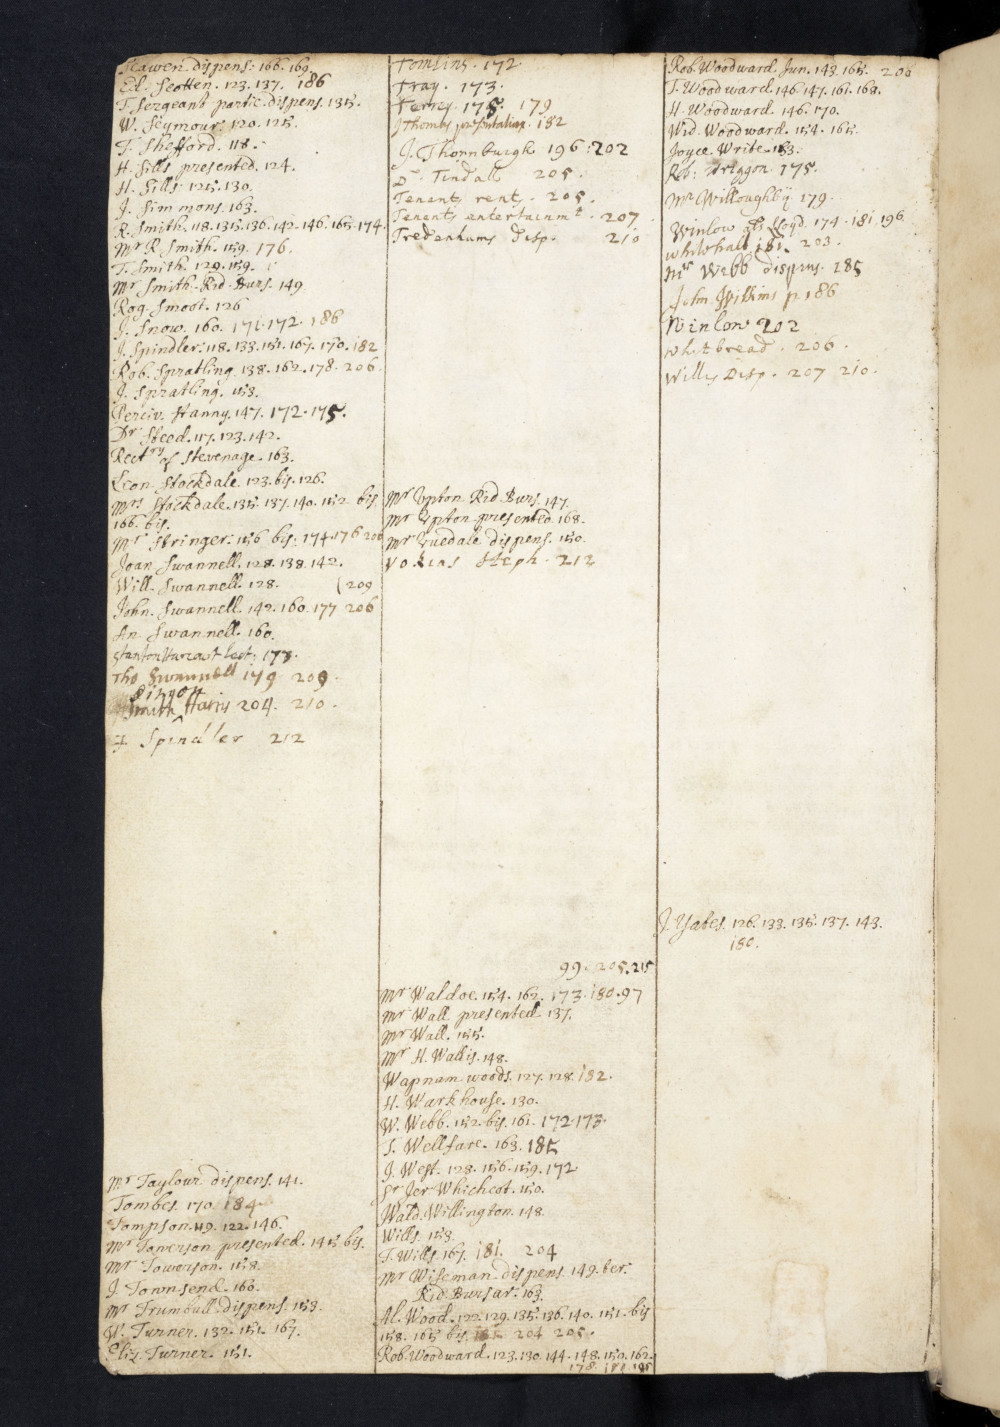 Folio 260 v